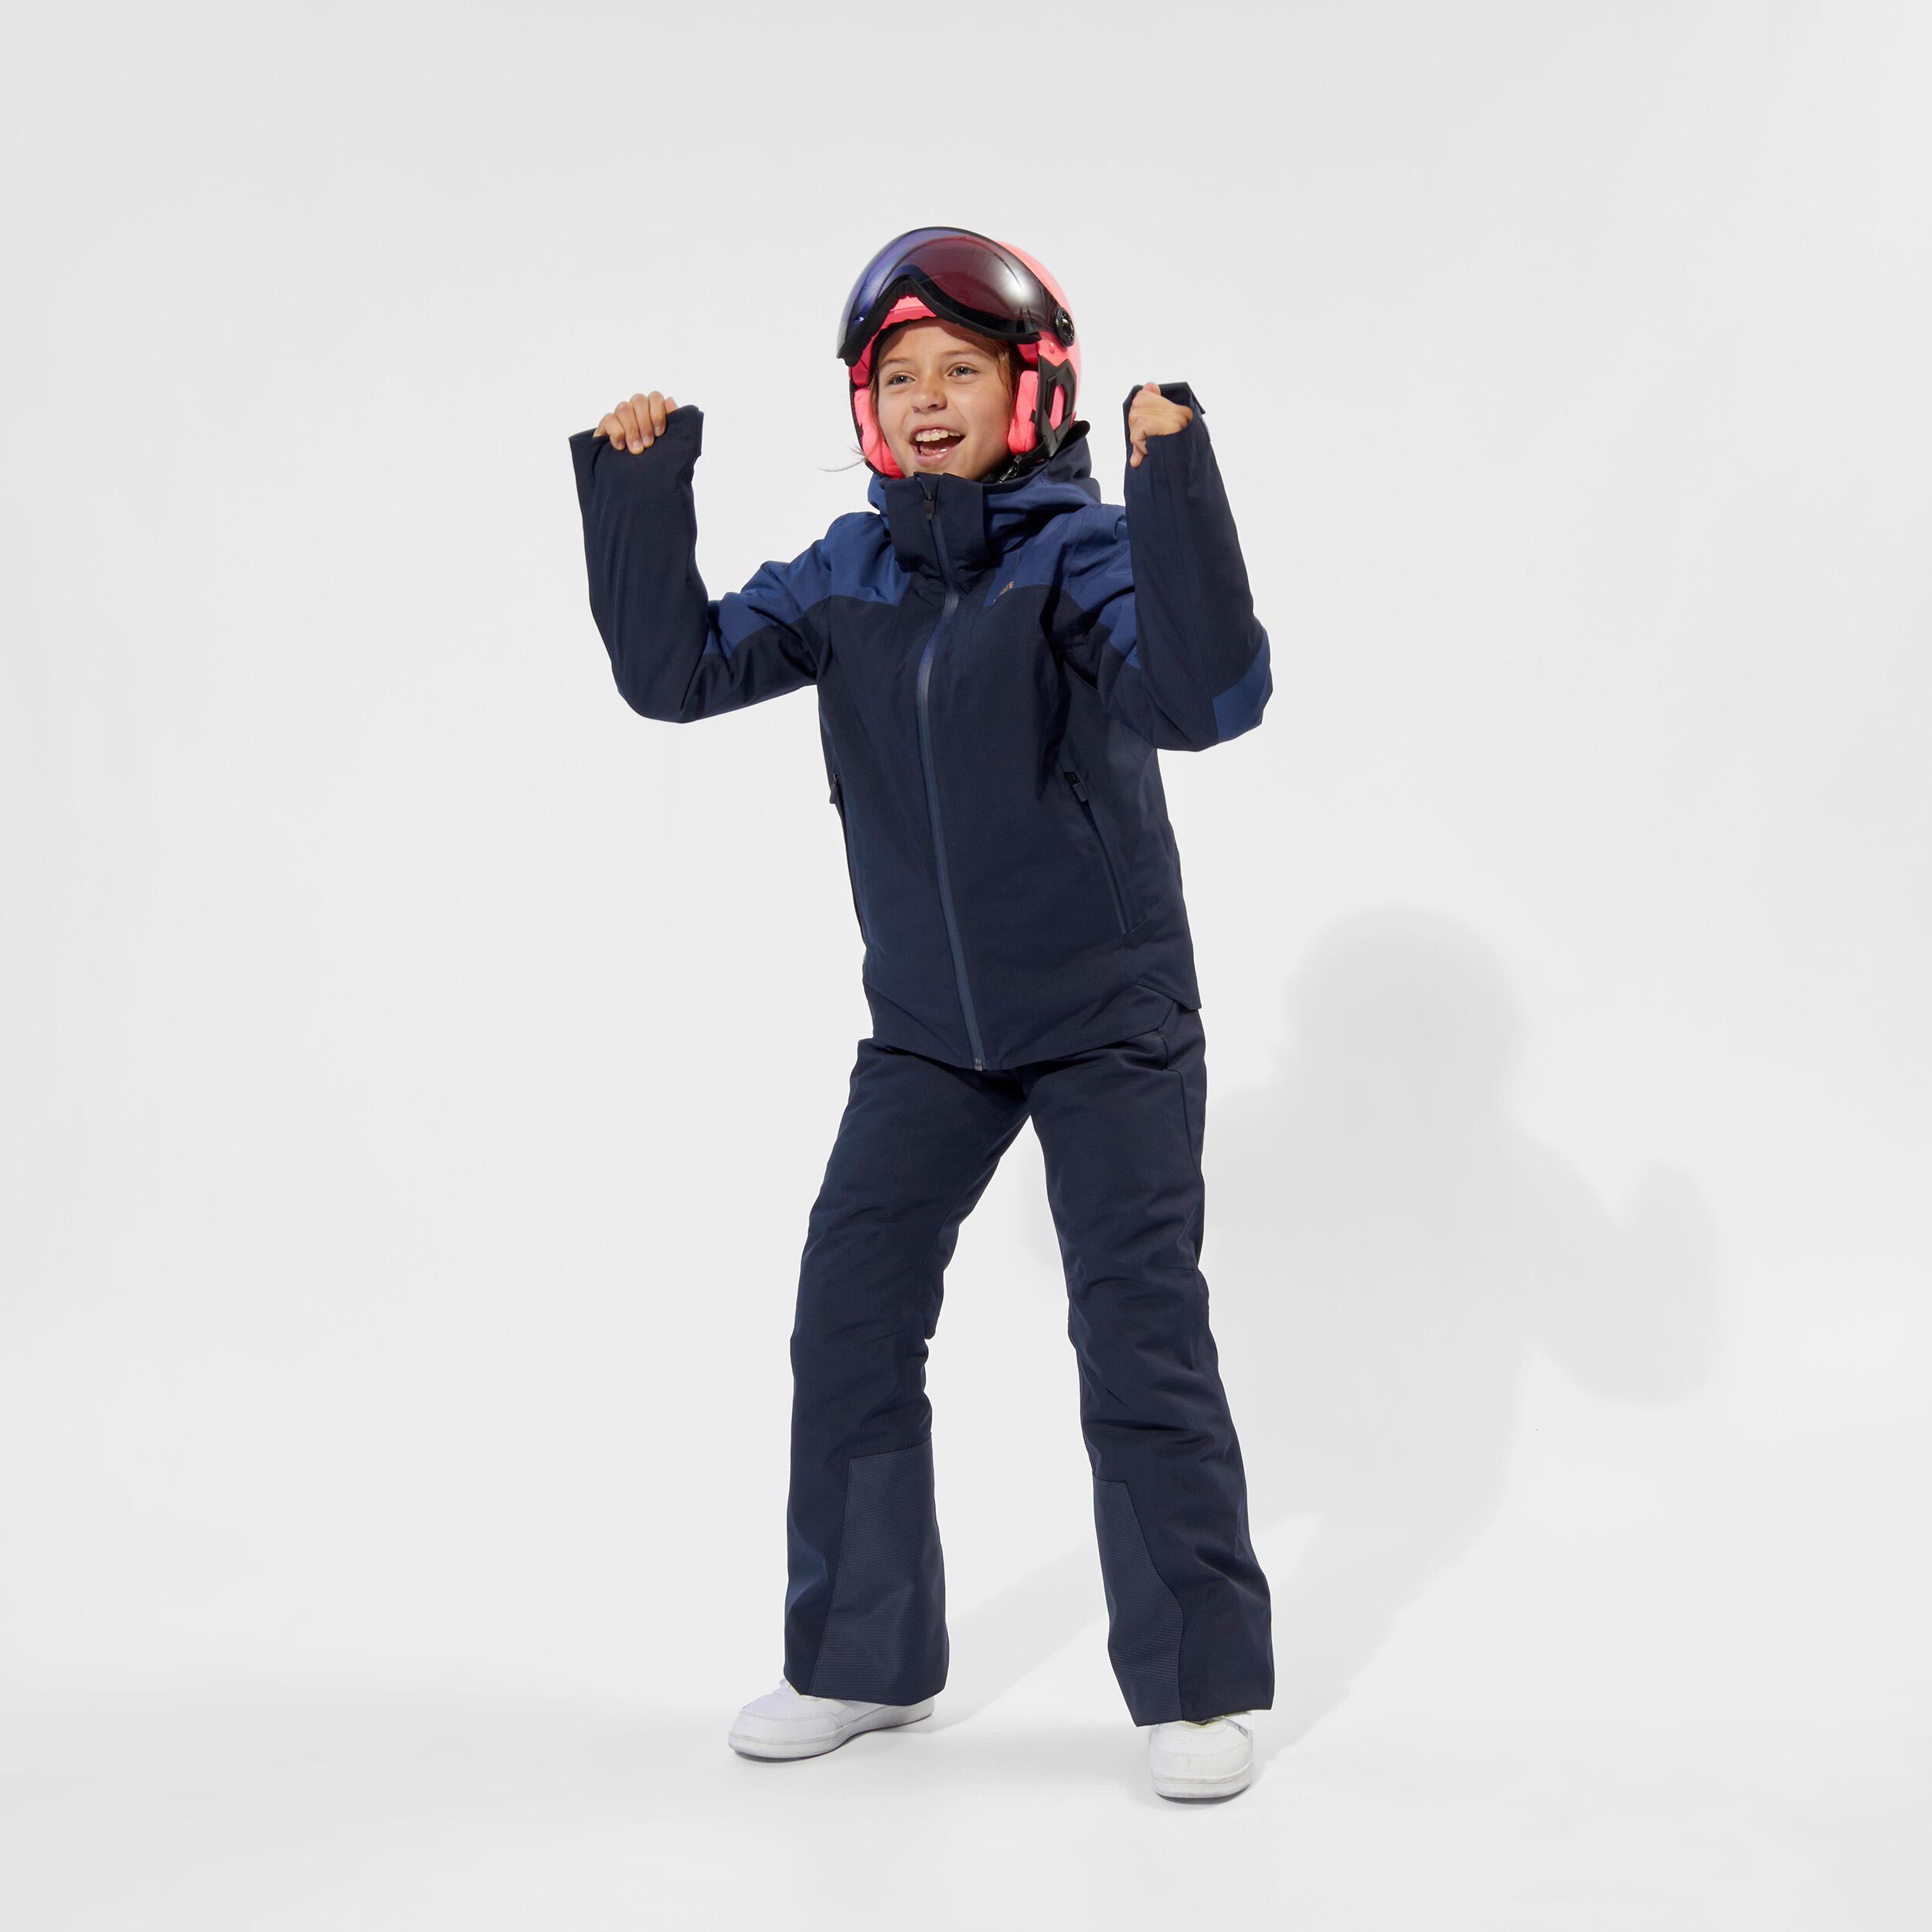 Pantalon de ski enfant chaud et imperméable PNF 900